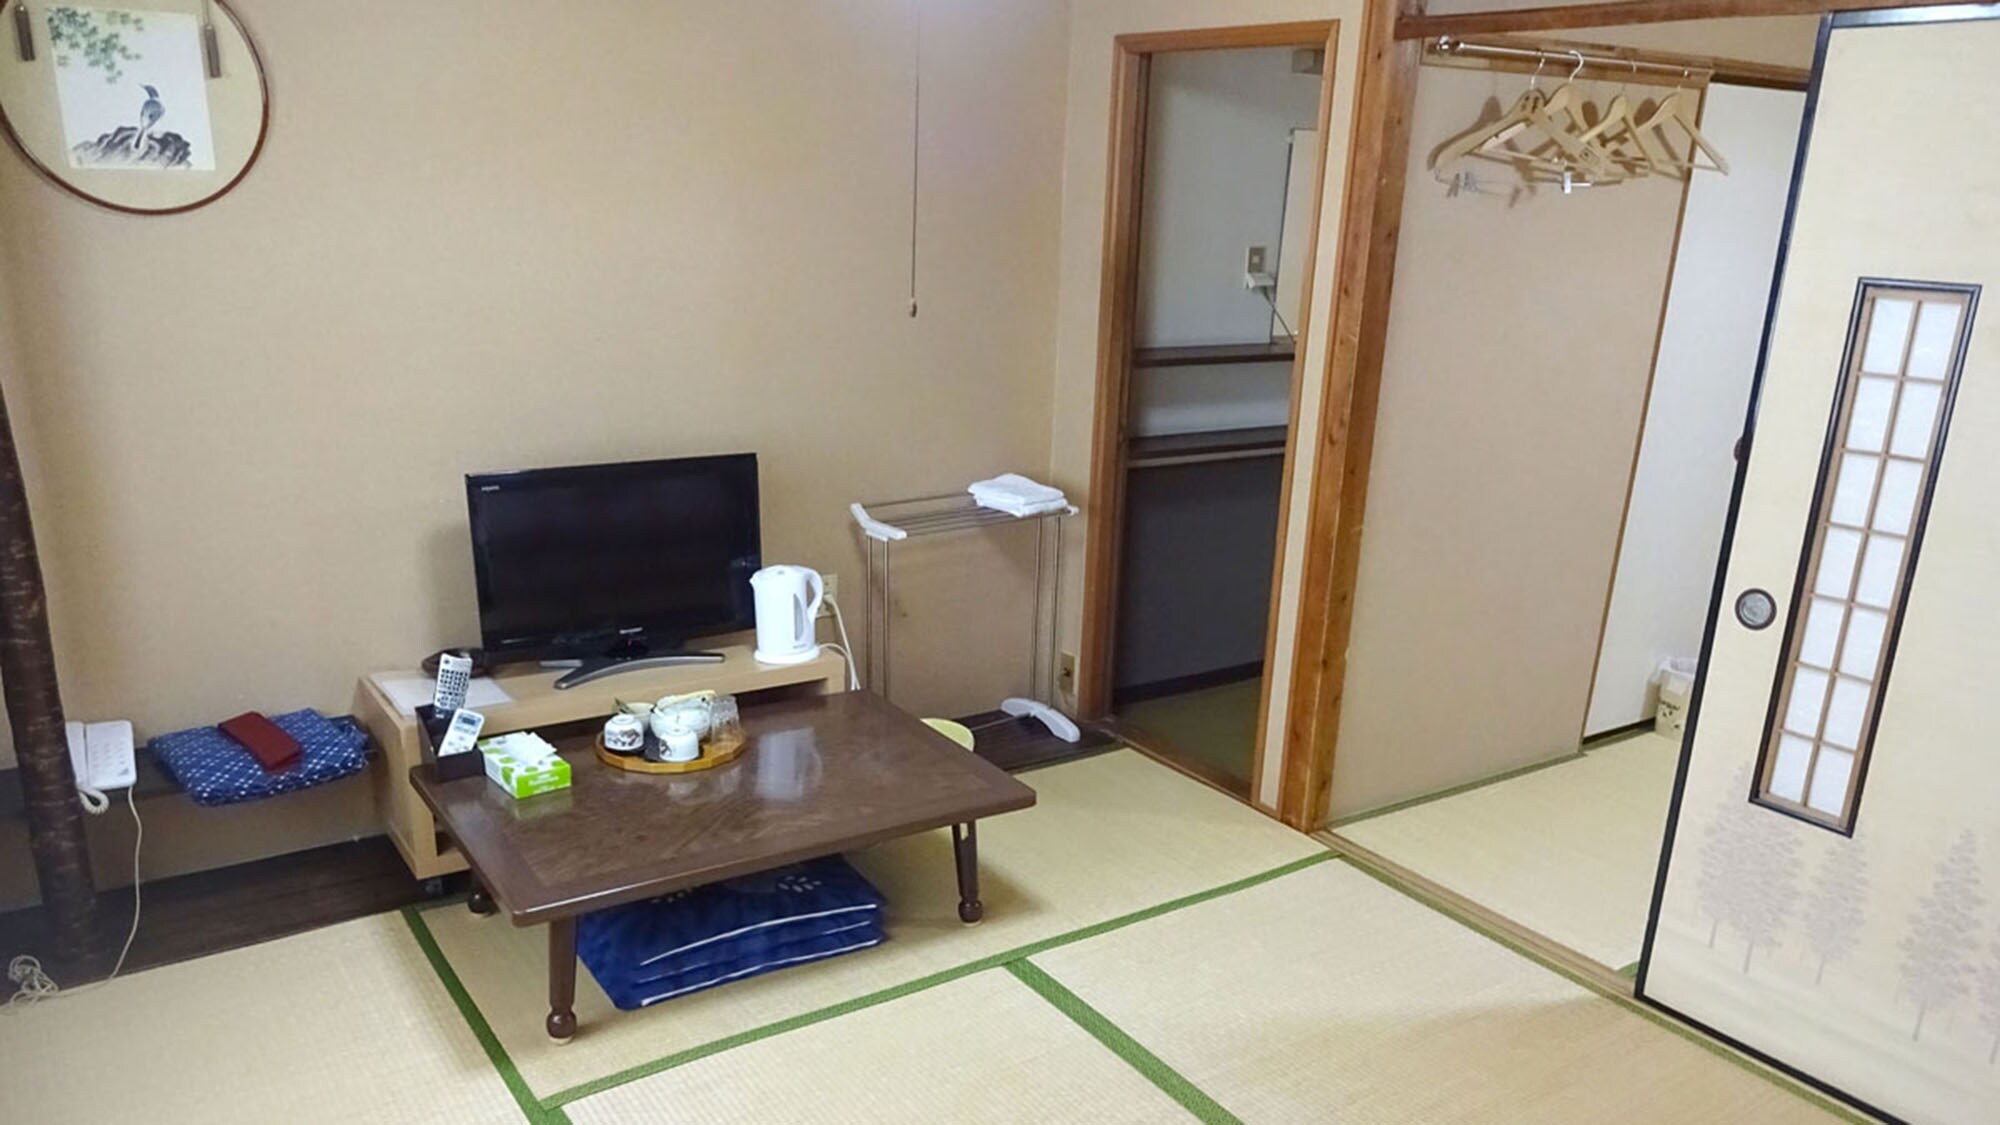 ・ [10張榻榻米的日式房間]最多可入住4人。請在榻榻米房間放鬆一下